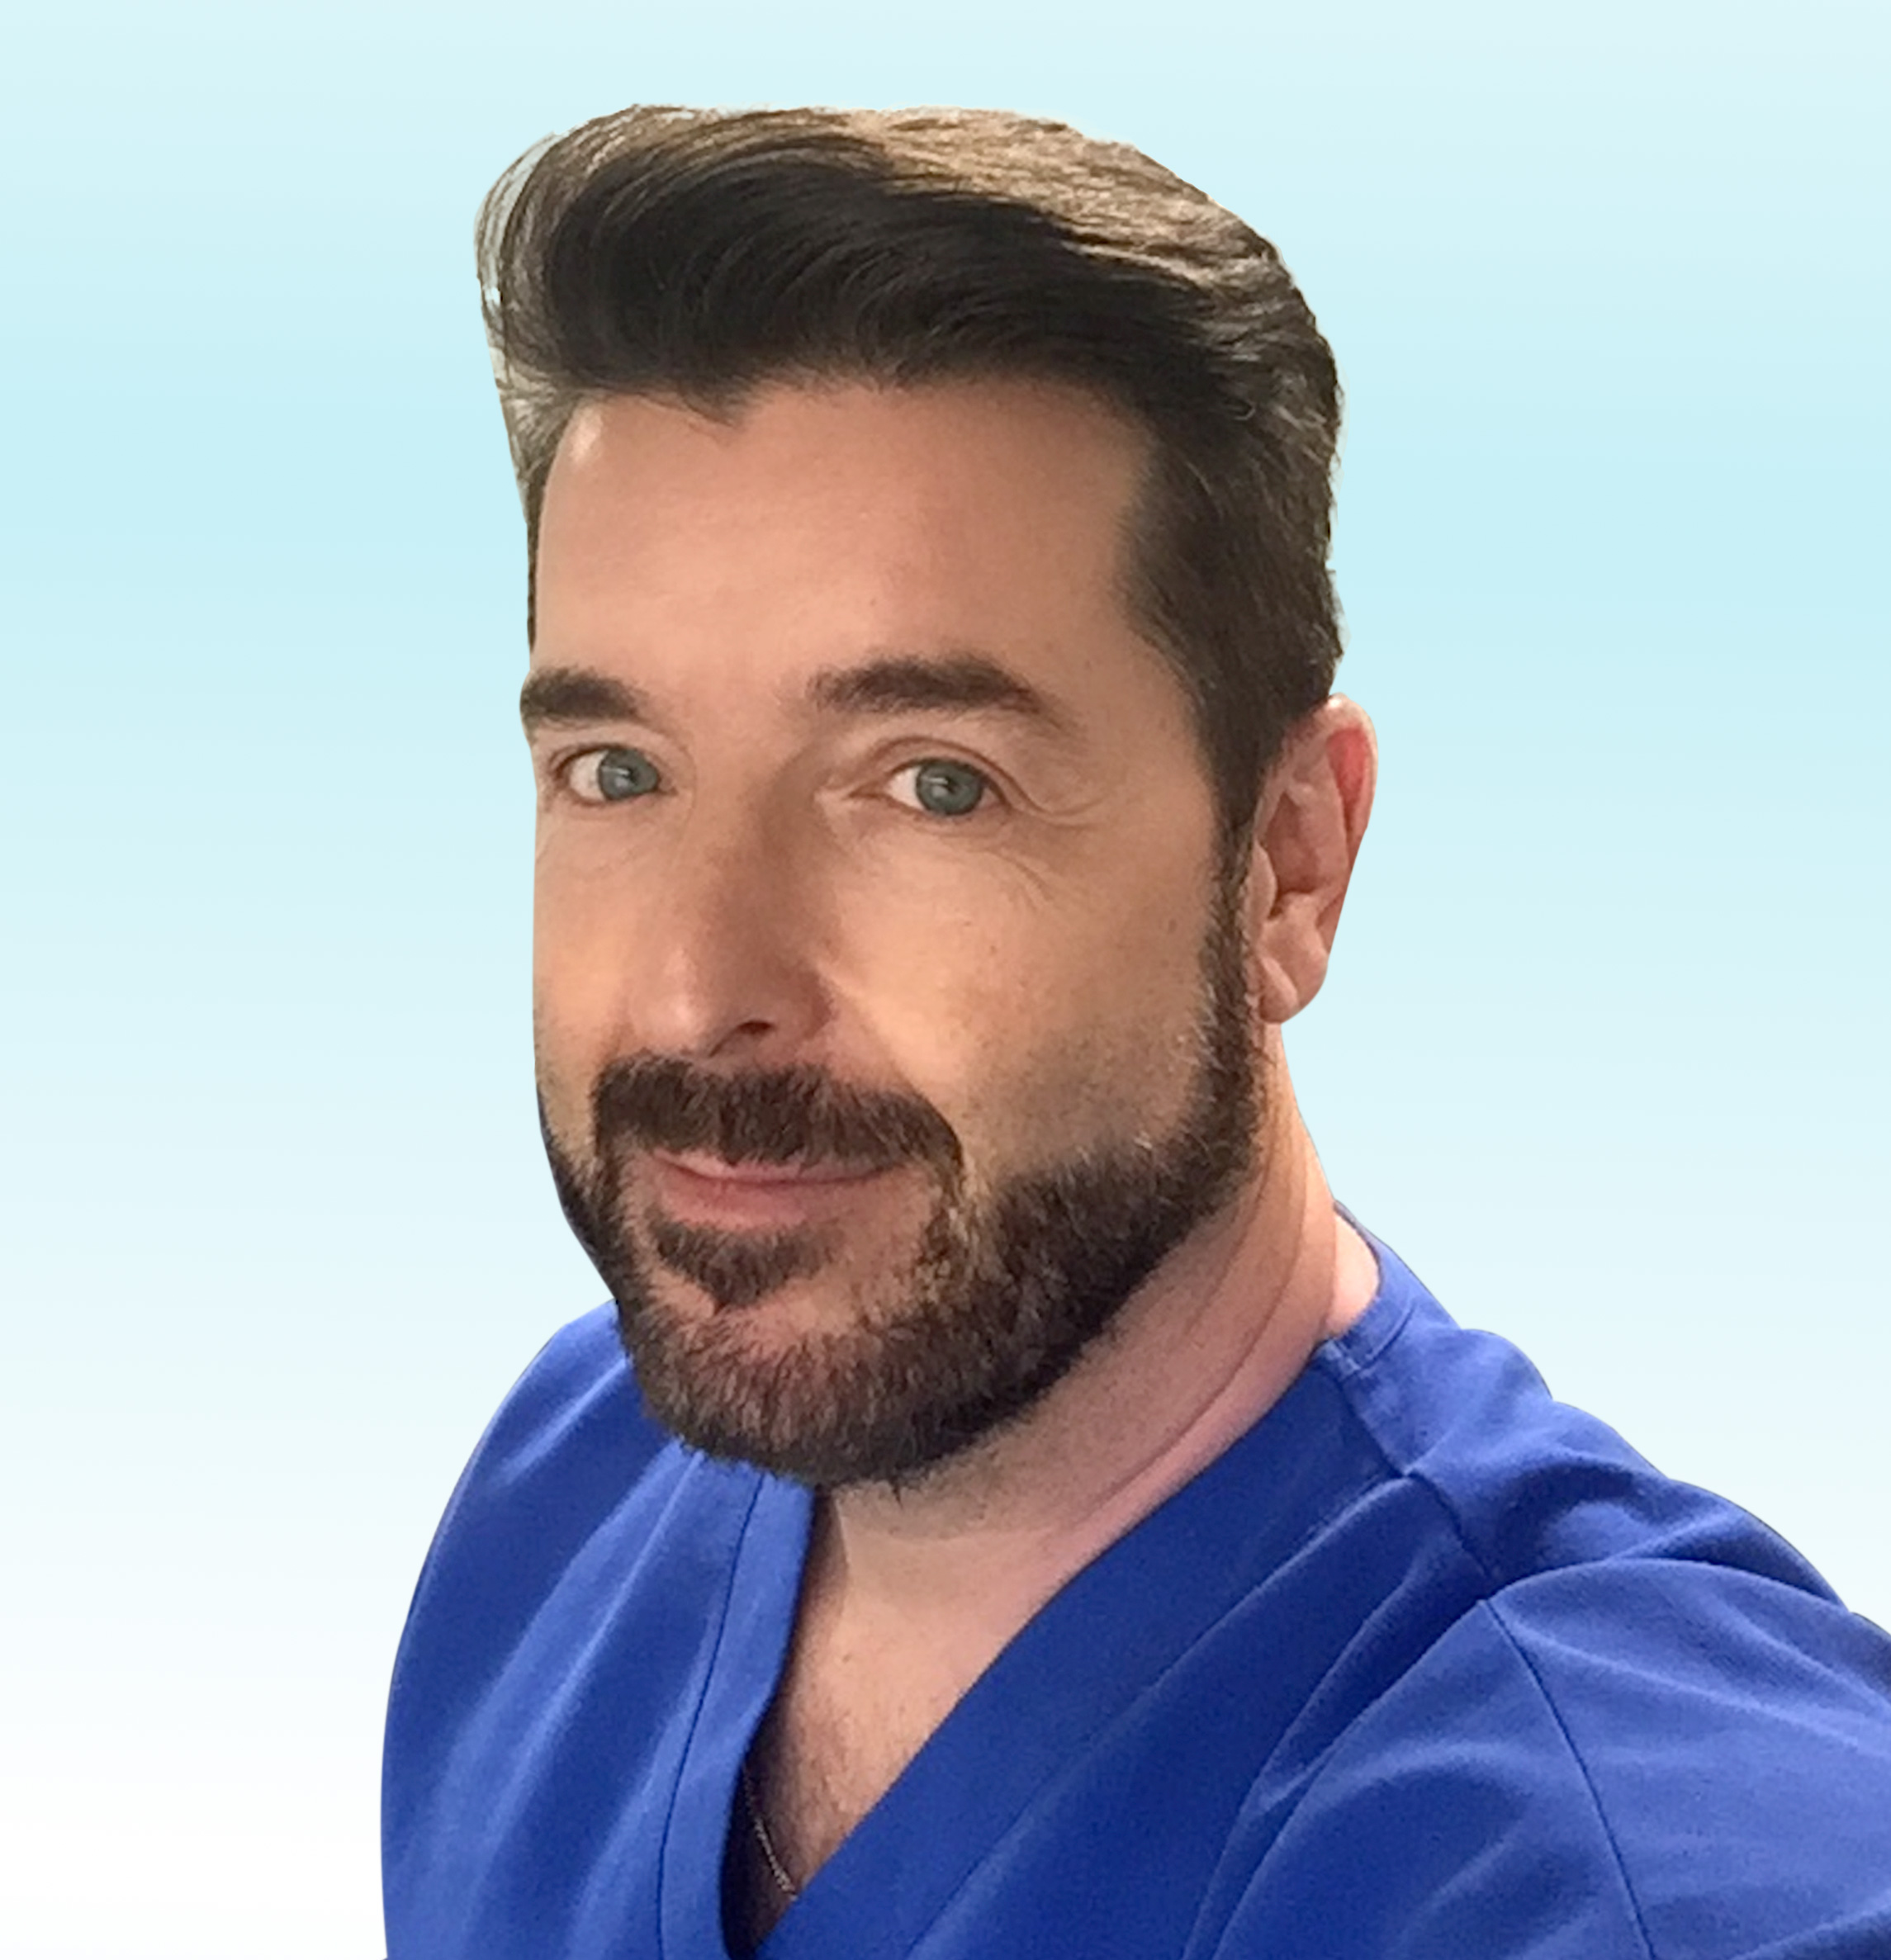 Hautarzt, Dr. med. Mario Graf